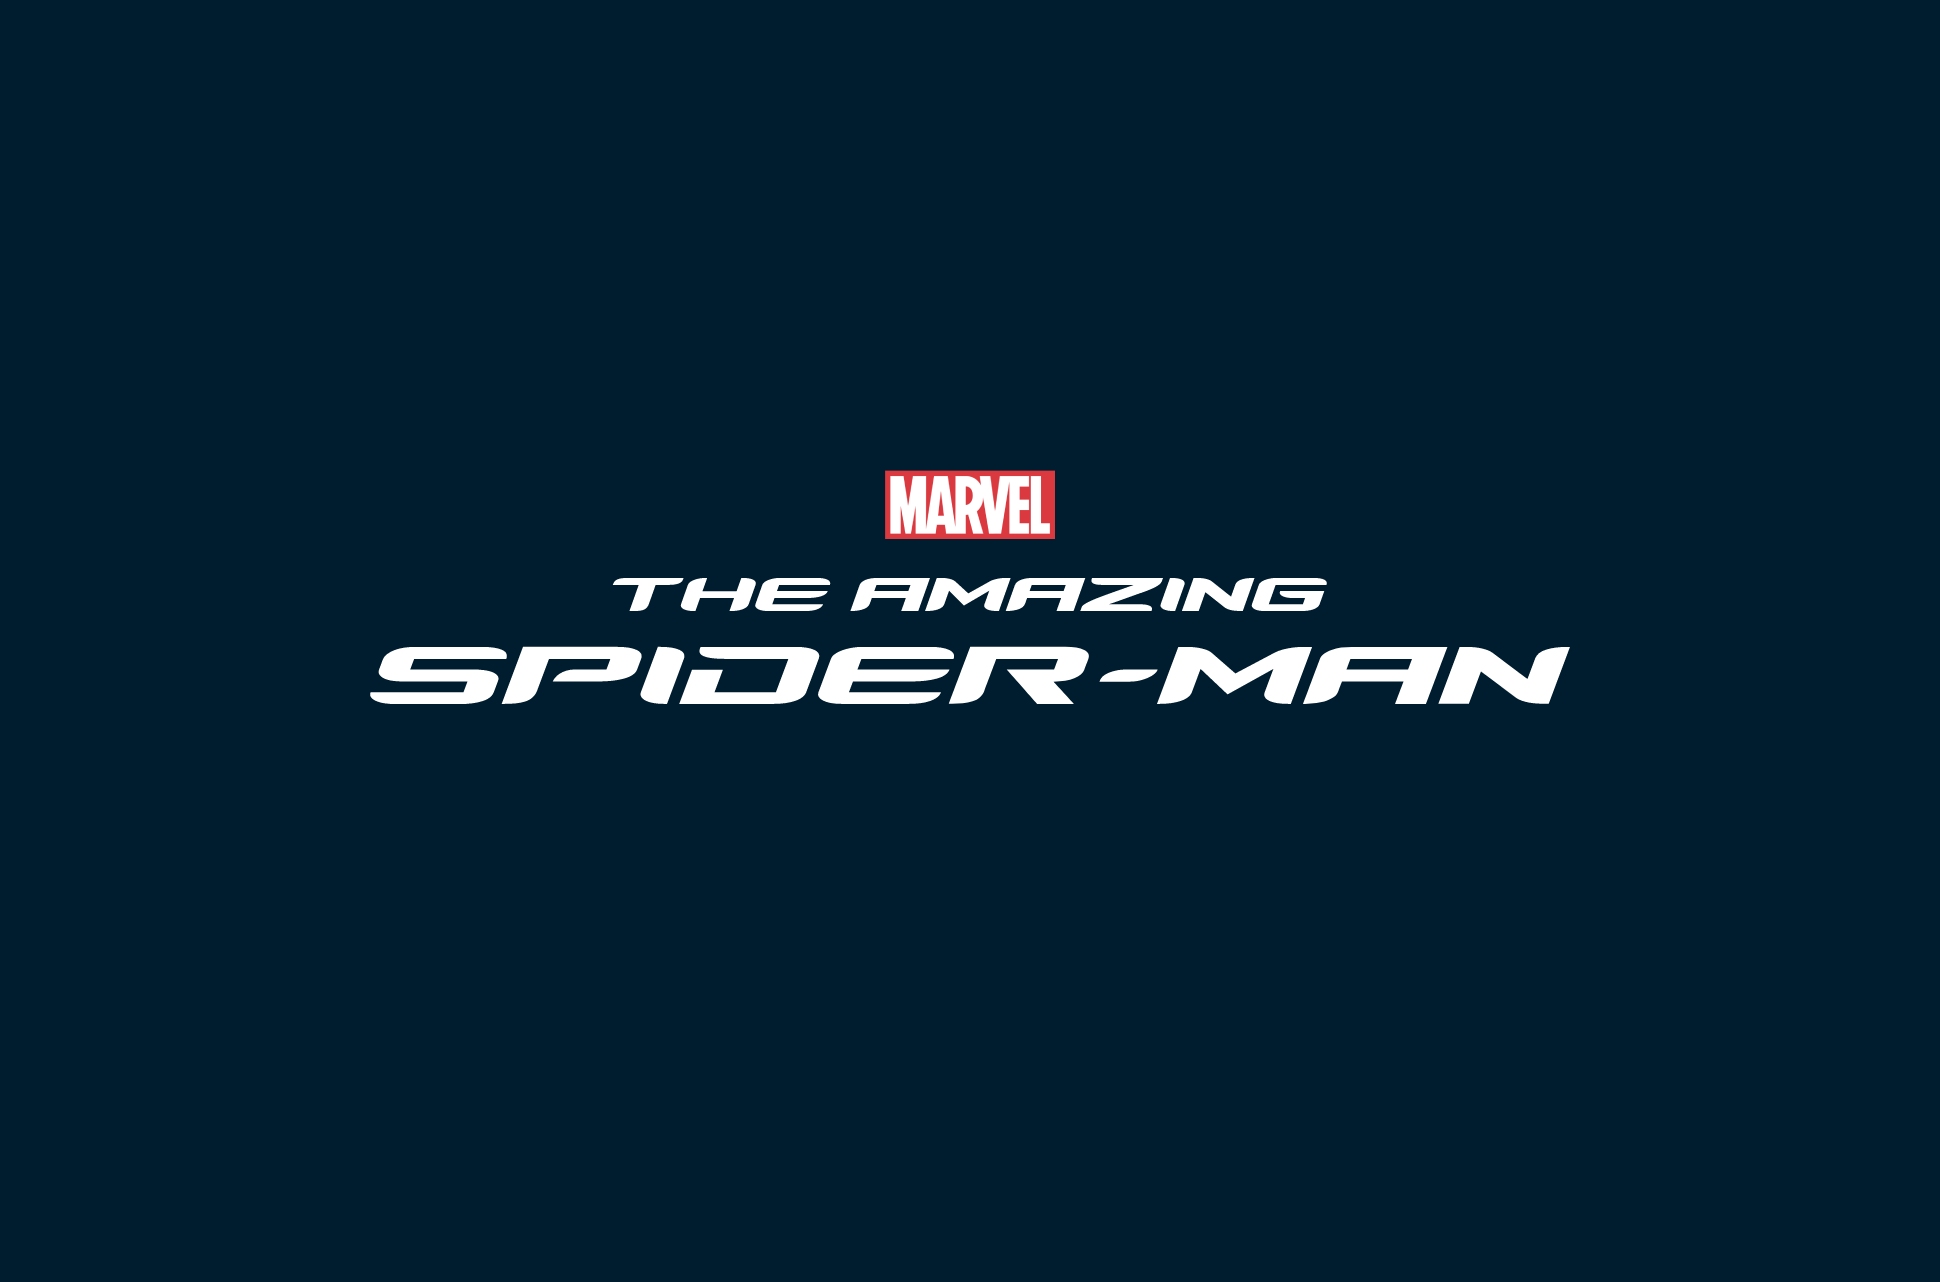 Marc Webb's Spider-Man films.